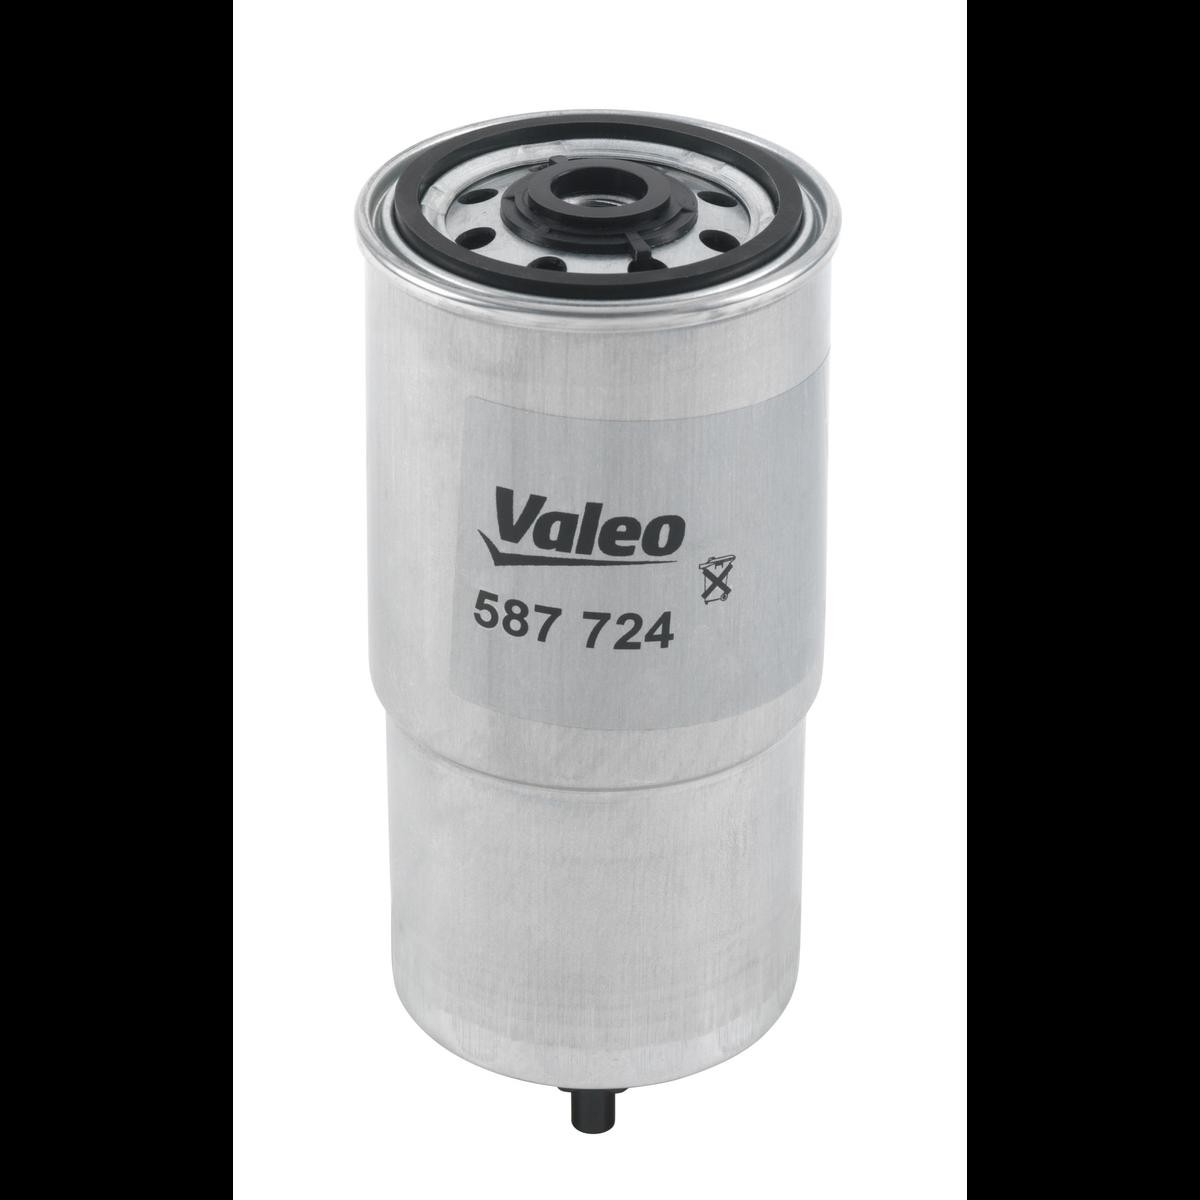 VALEO 587724 Fuel filter 16403J2000